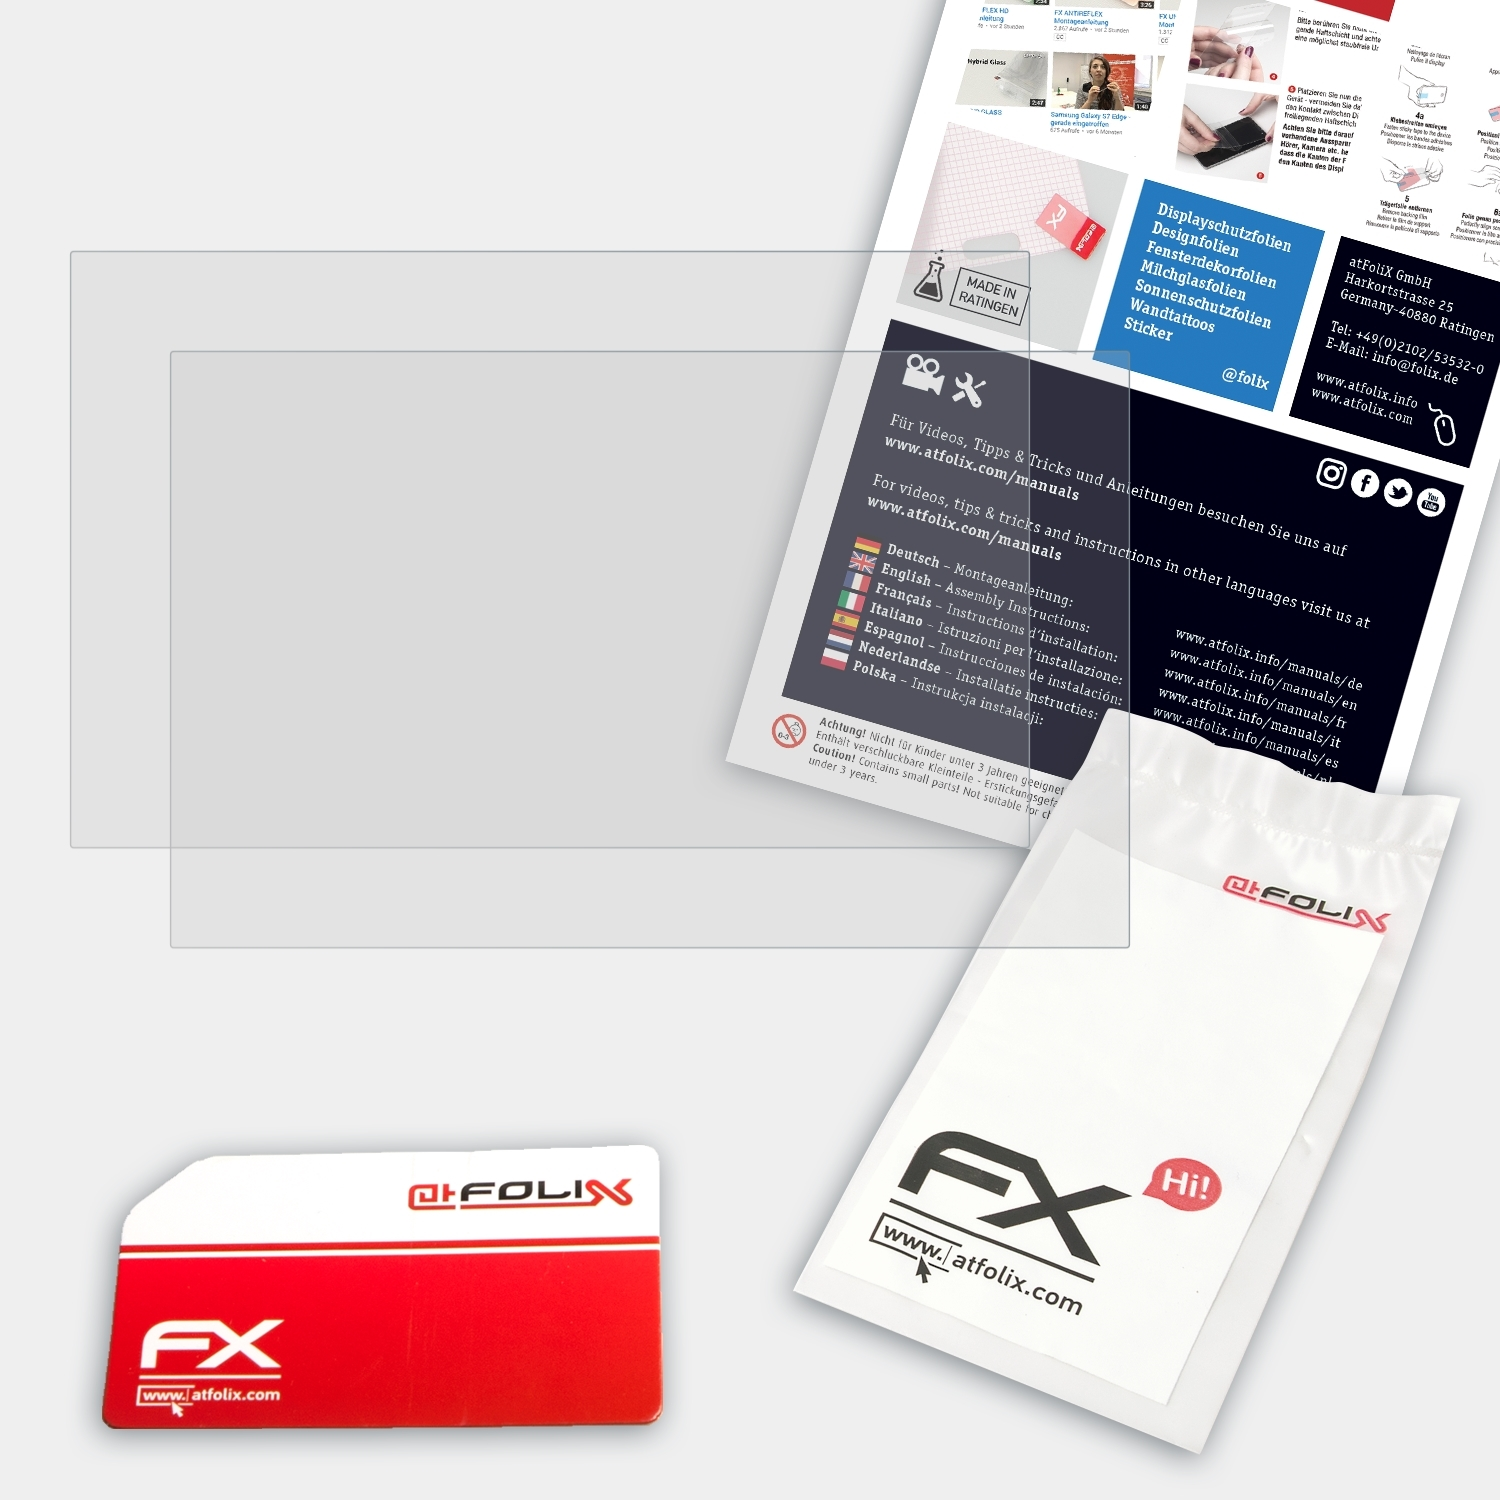 ATFOLIX 2x FX-Antireflex Pro) Chuwi HeroBook Displayschutz(für